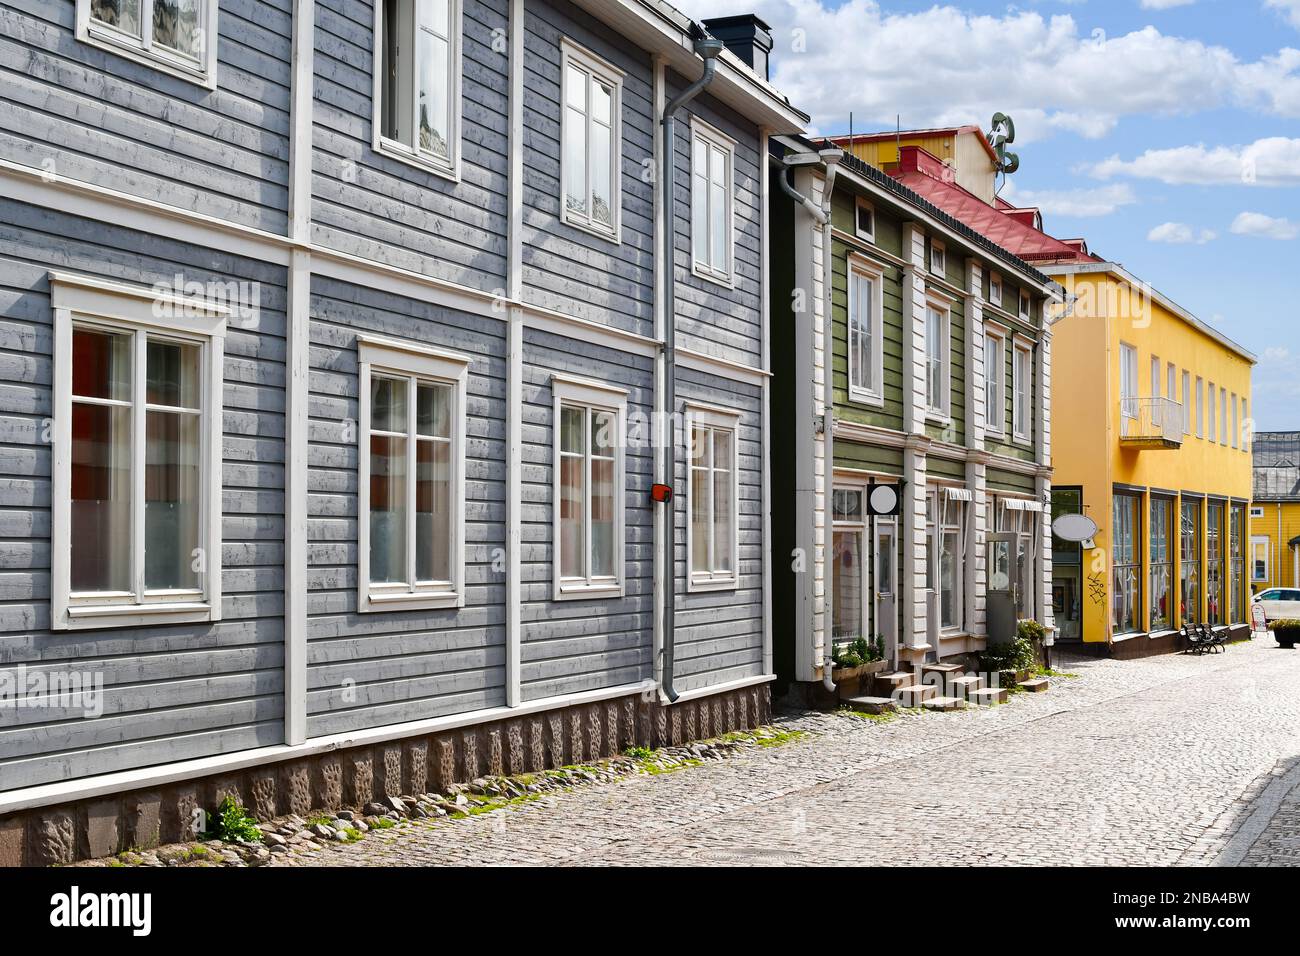 Negozi colorati e pittoreschi ed edifici in legno fiancheggiano la principale strada acciottolata attraverso il centro storico medievale di Porvoo, Finlandia Foto Stock